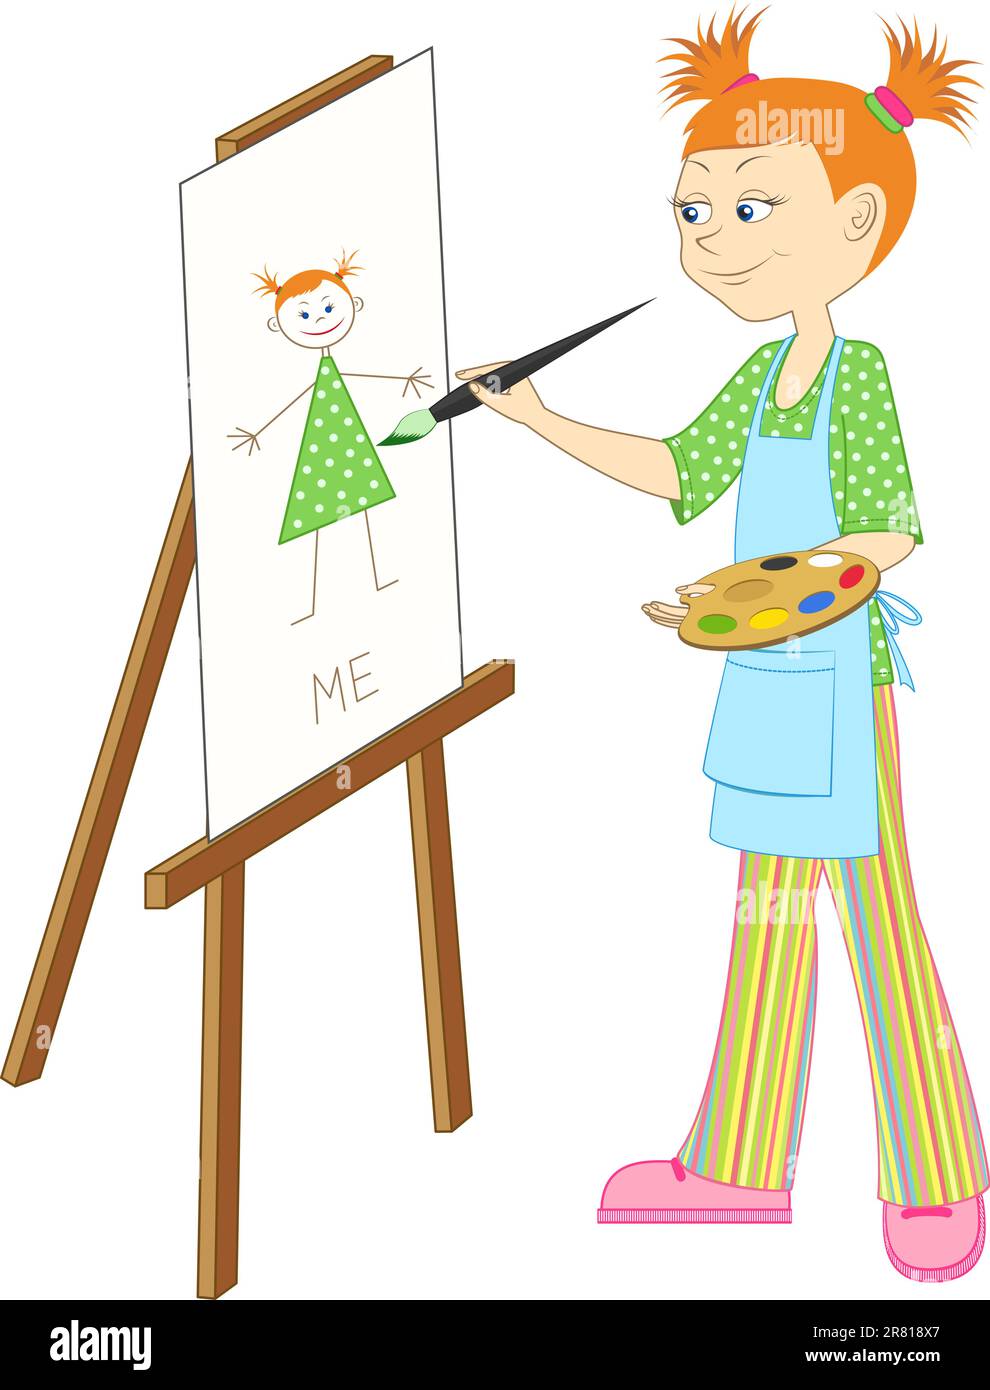 Pintura de niño pequeño en caballete dibujo de personaje de niña negra en  estudio de artista o taller de arte crear imágenes en lienzo